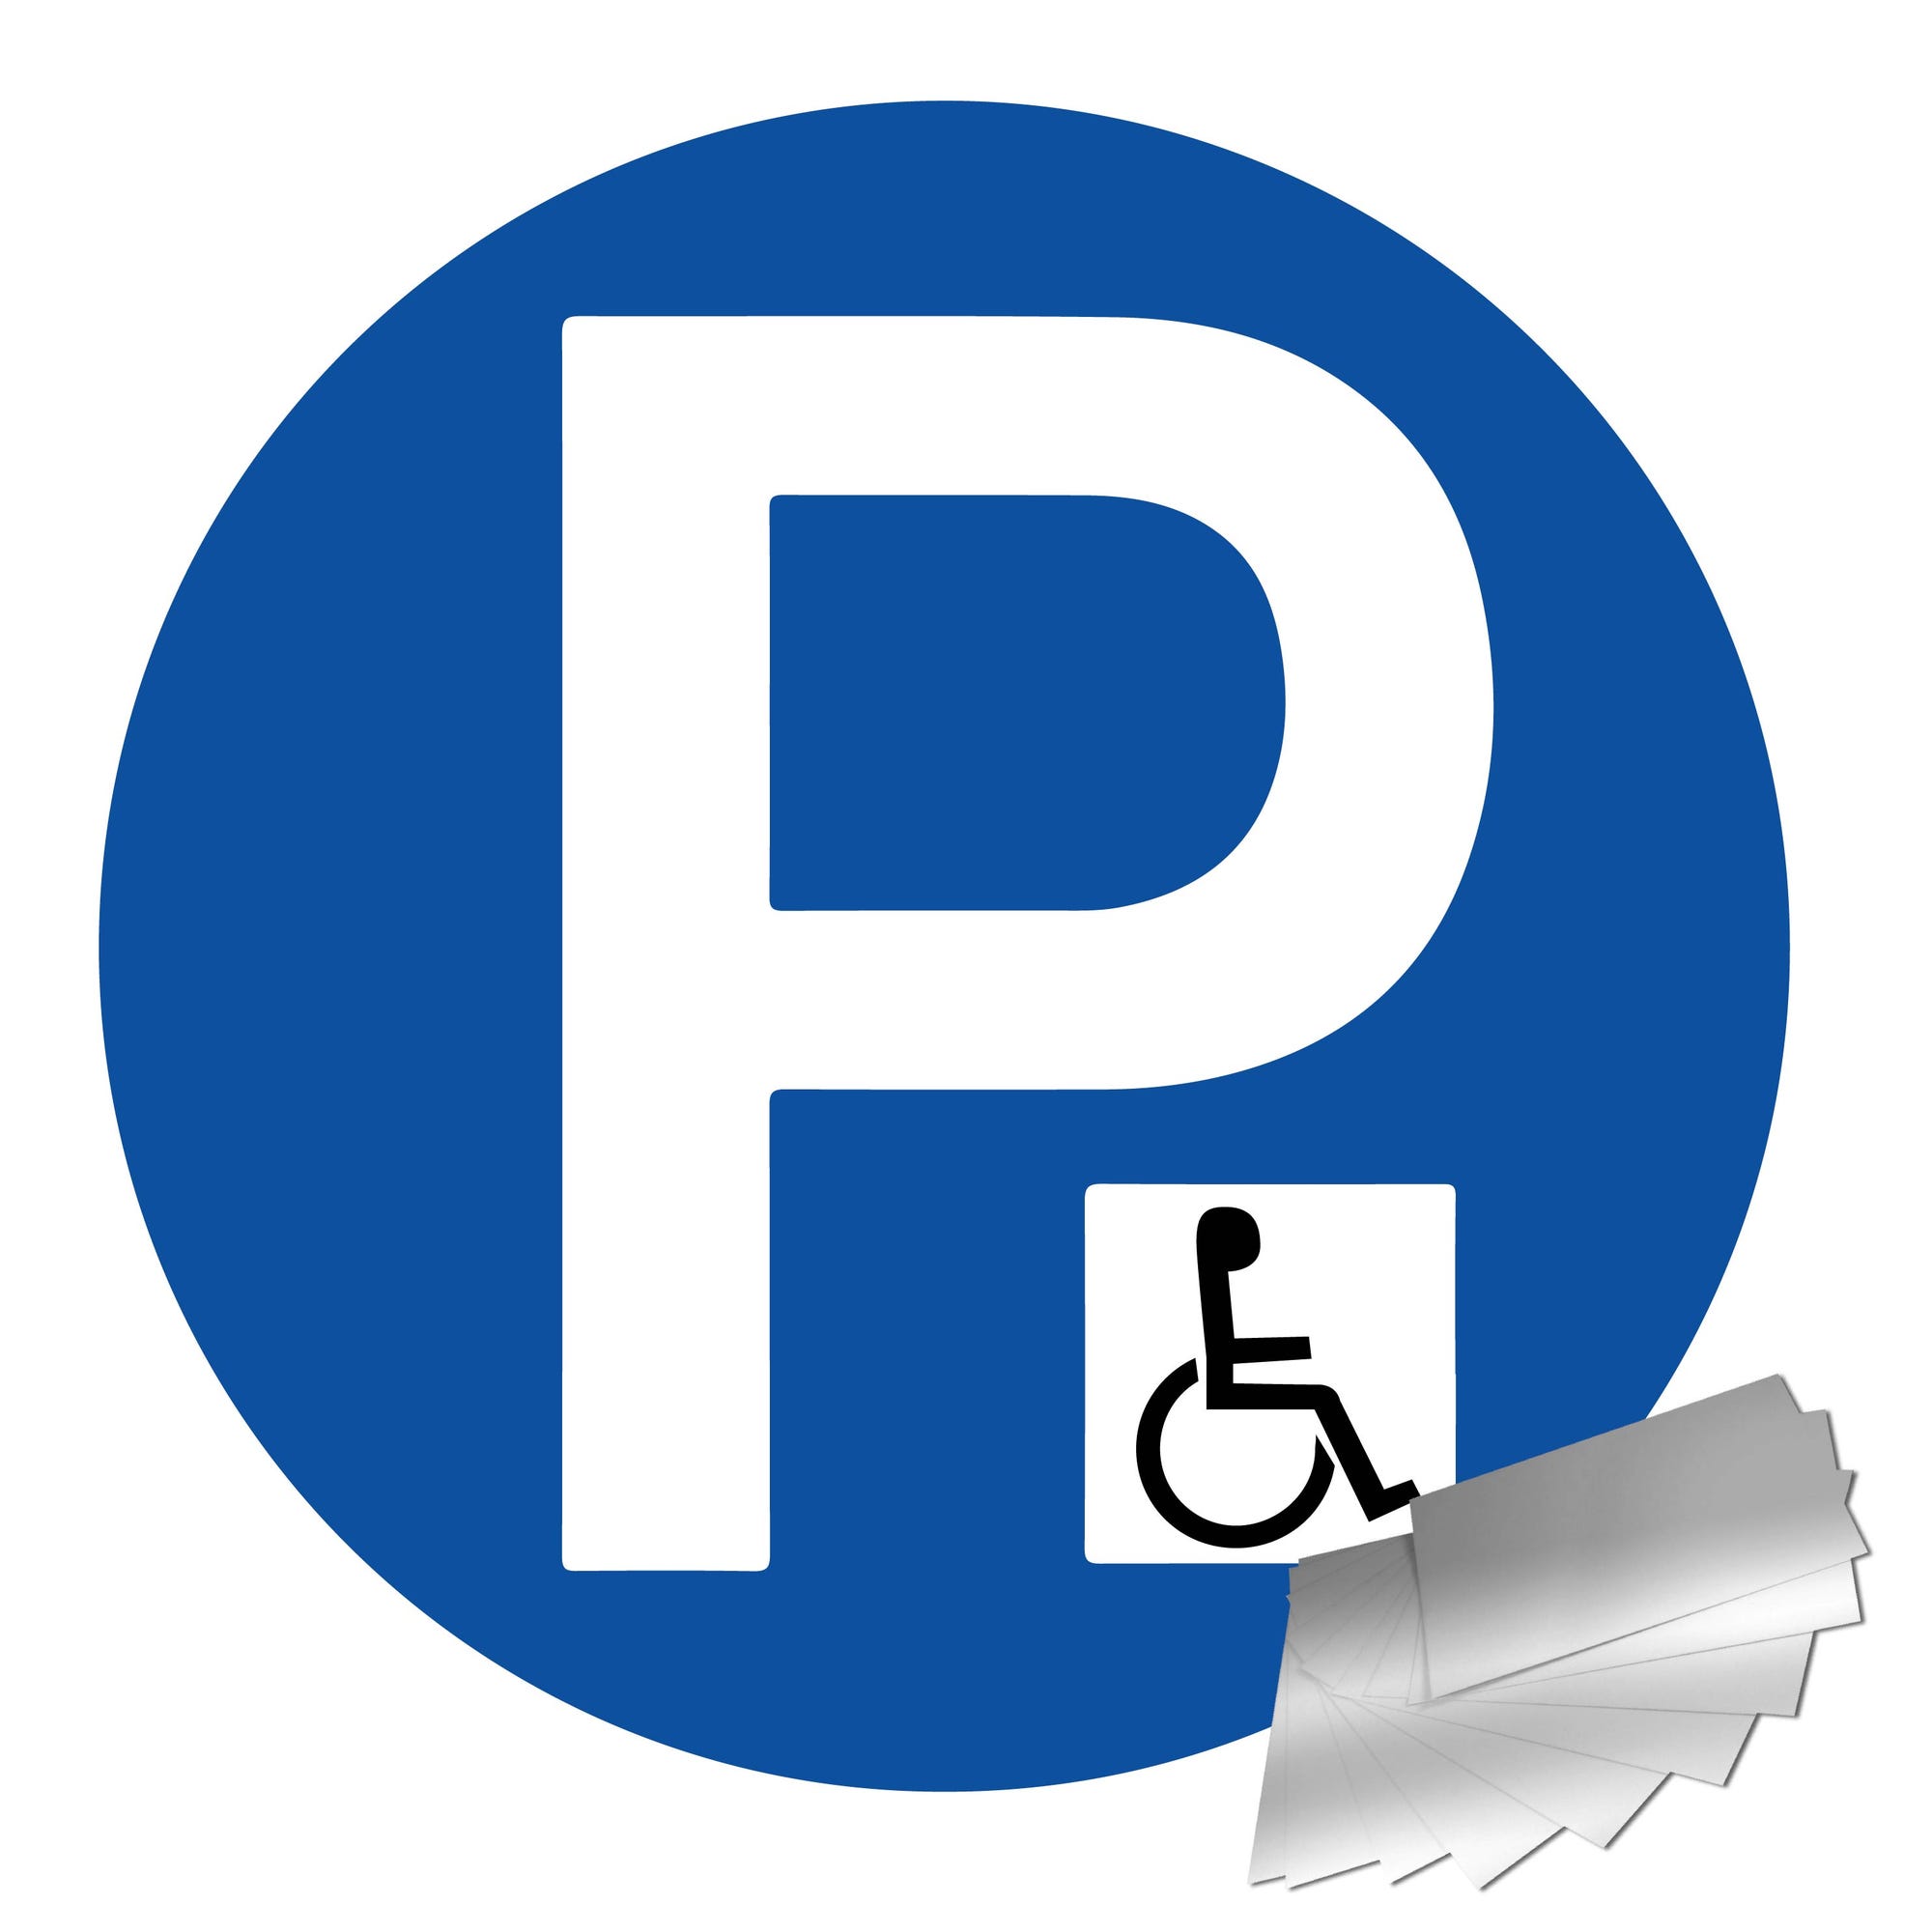 Panneau Parking réserve handicapé - Alu Ø300mm - 4011325 0